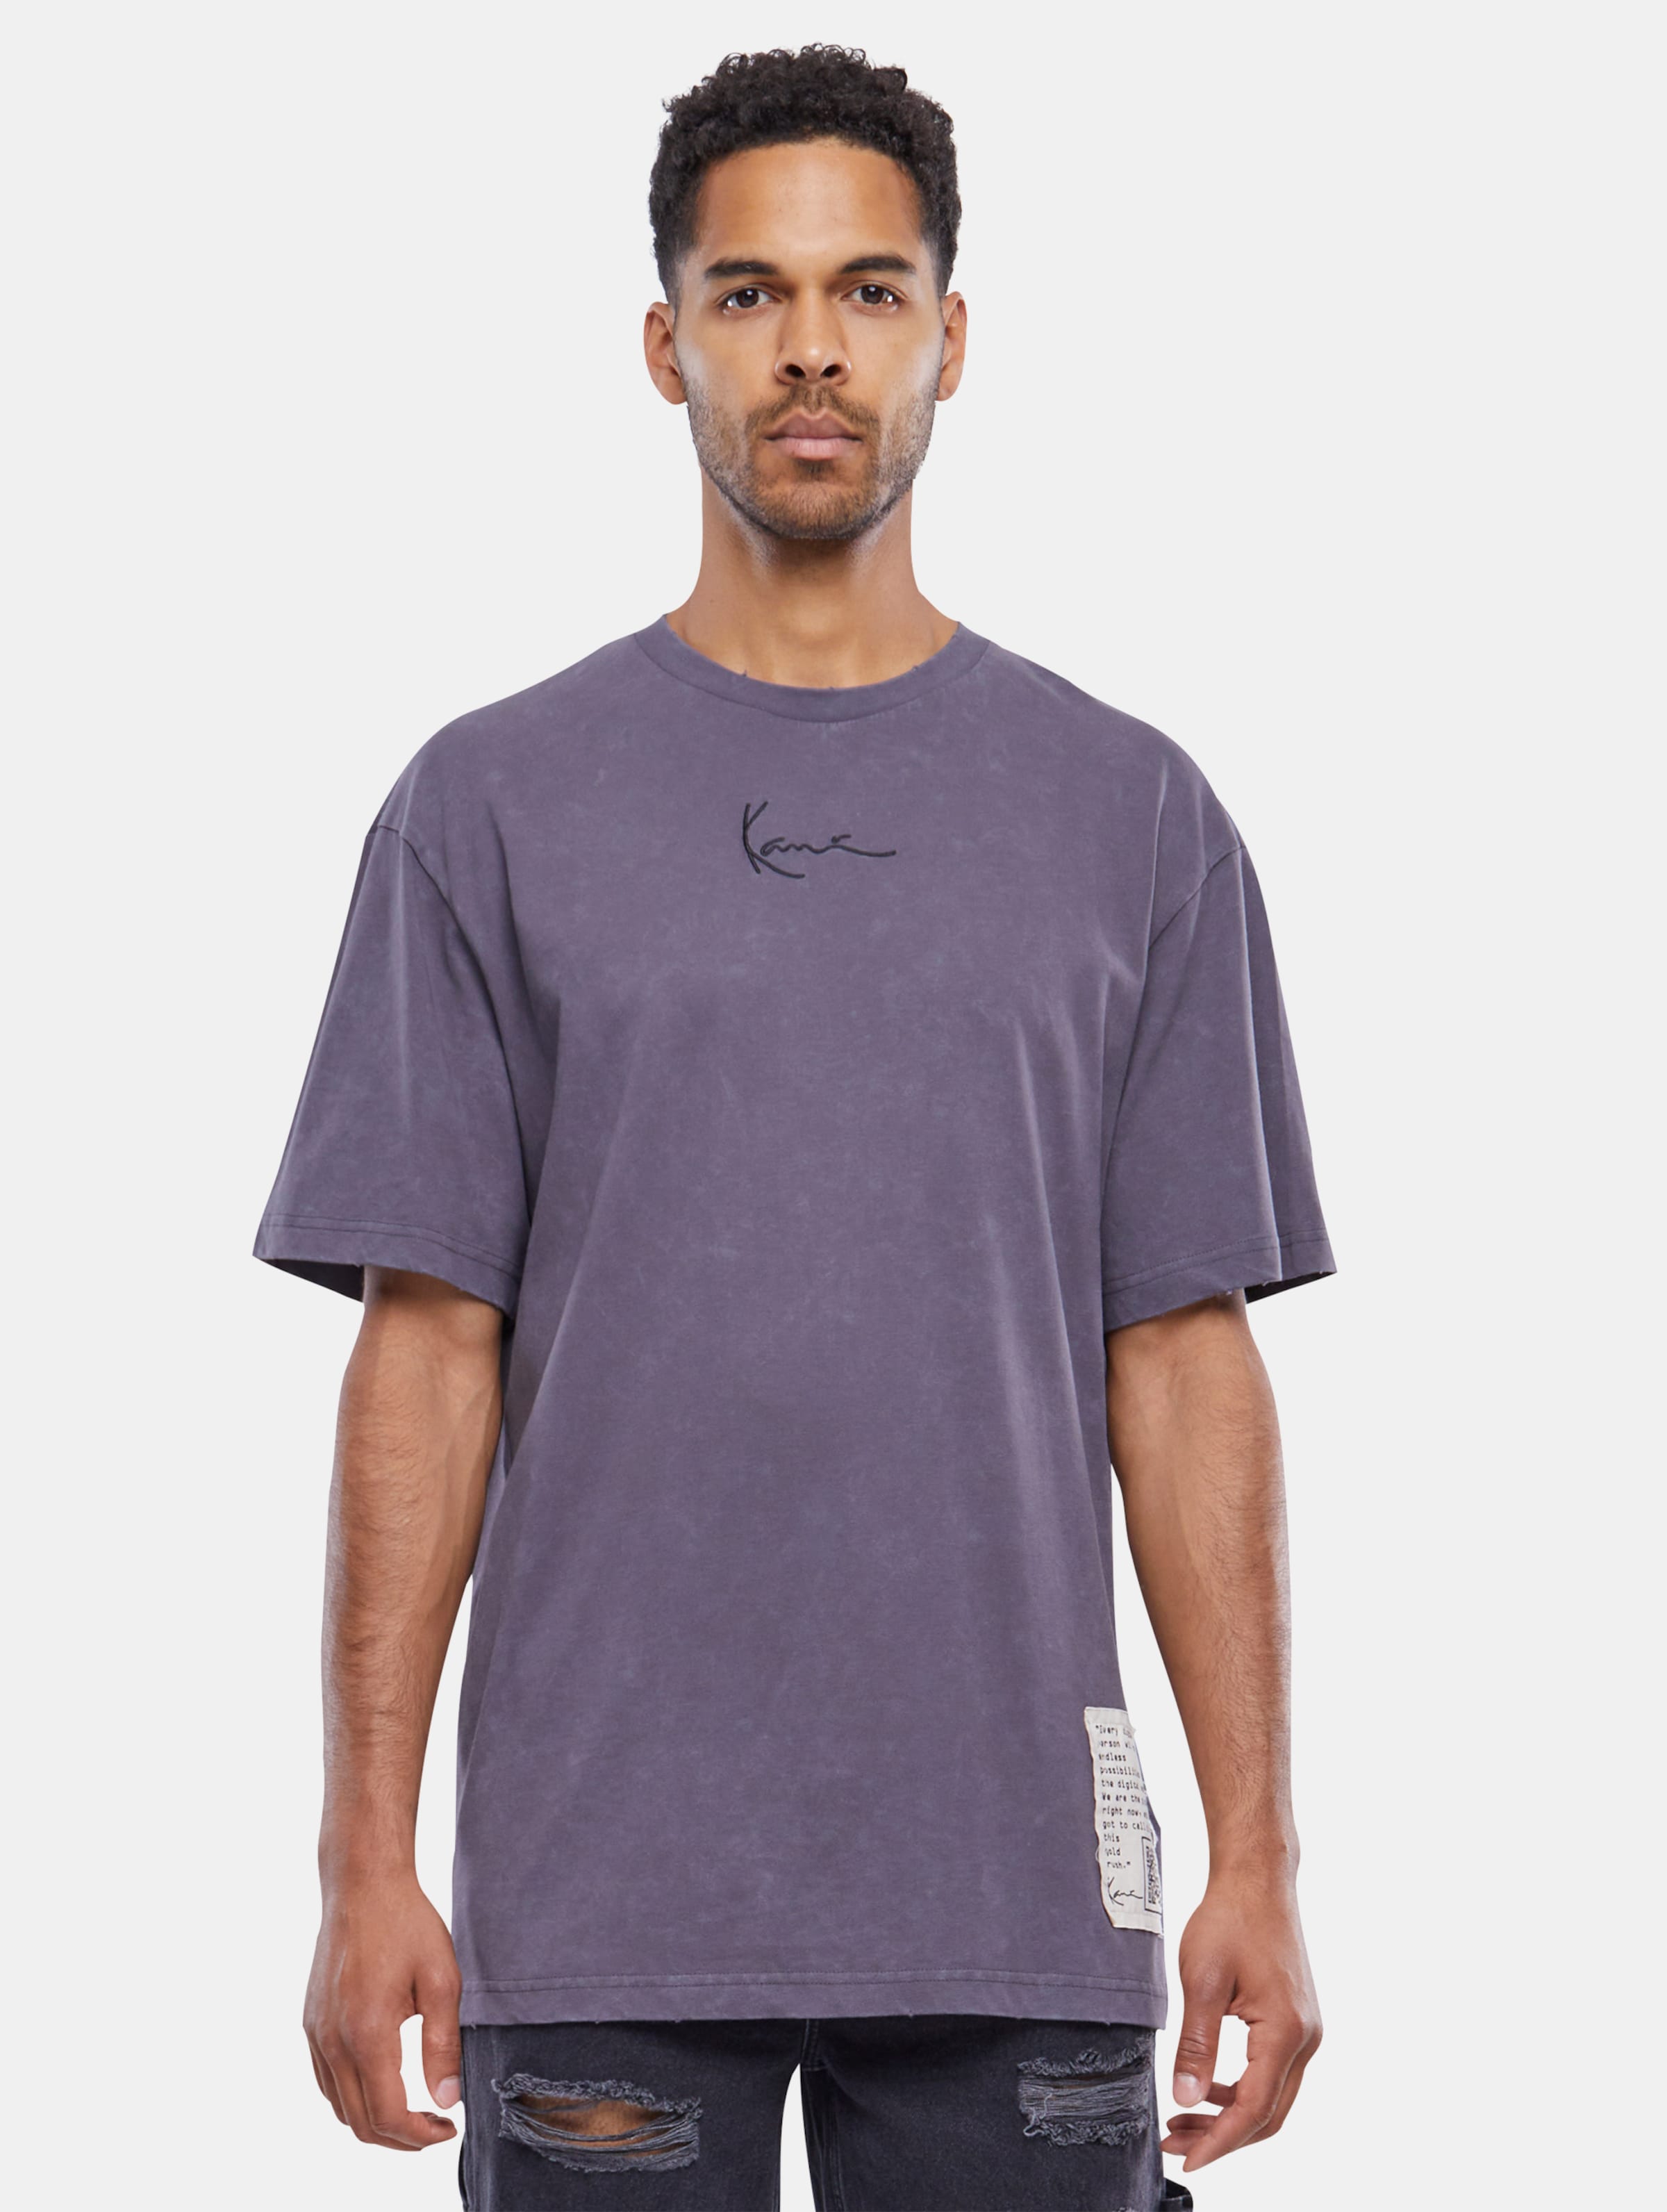 Karl Kani Small Signature destroyed T-Shirt Männer,Unisex op kleur violet, Maat L